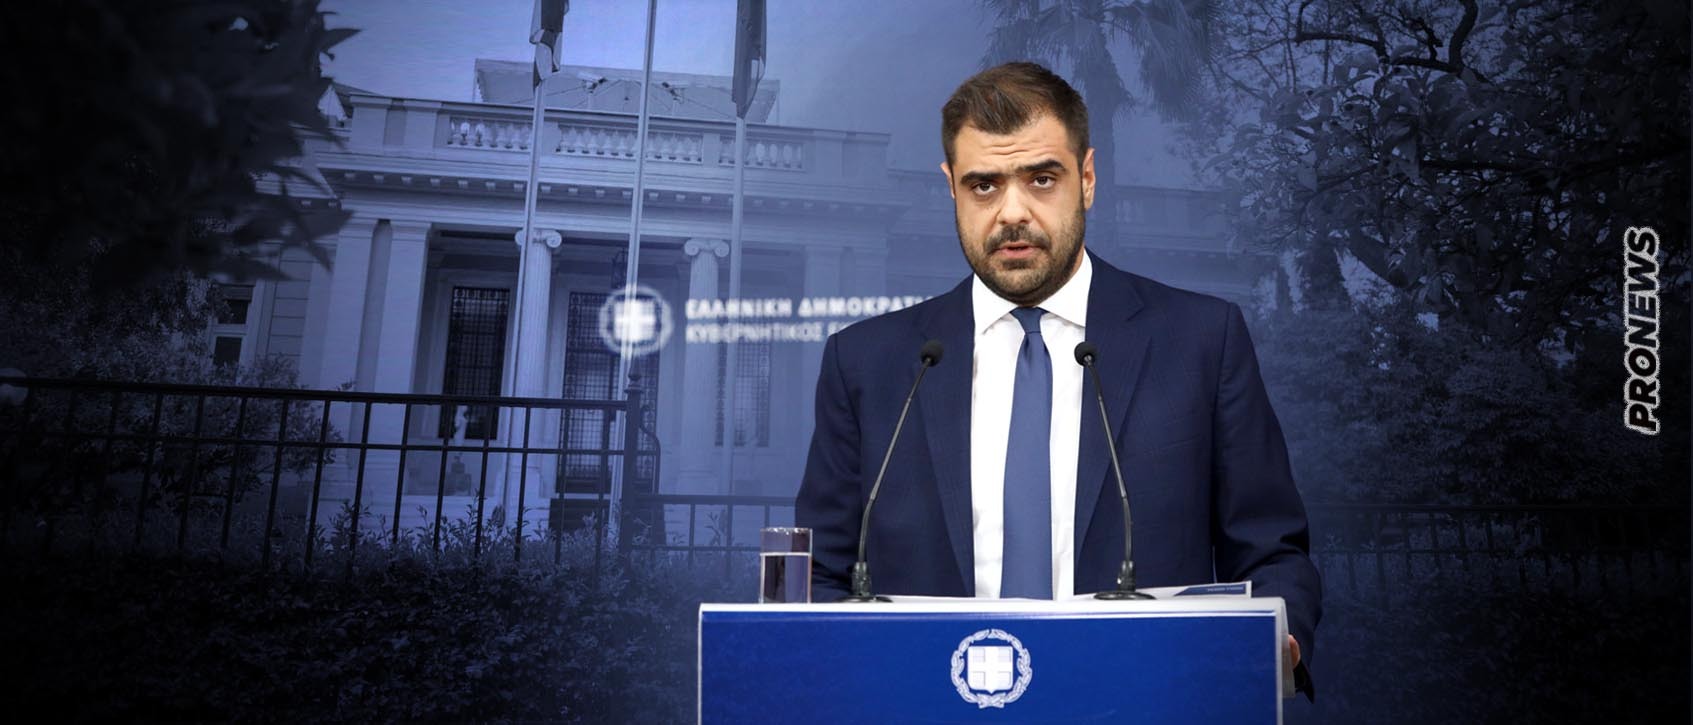 Π.Μαρινάκης για τους 300.000 παράνομους μετανάστες που θα νομιμοποιηθούν: «Δεν θα τους ελληνοποιήσουμε»